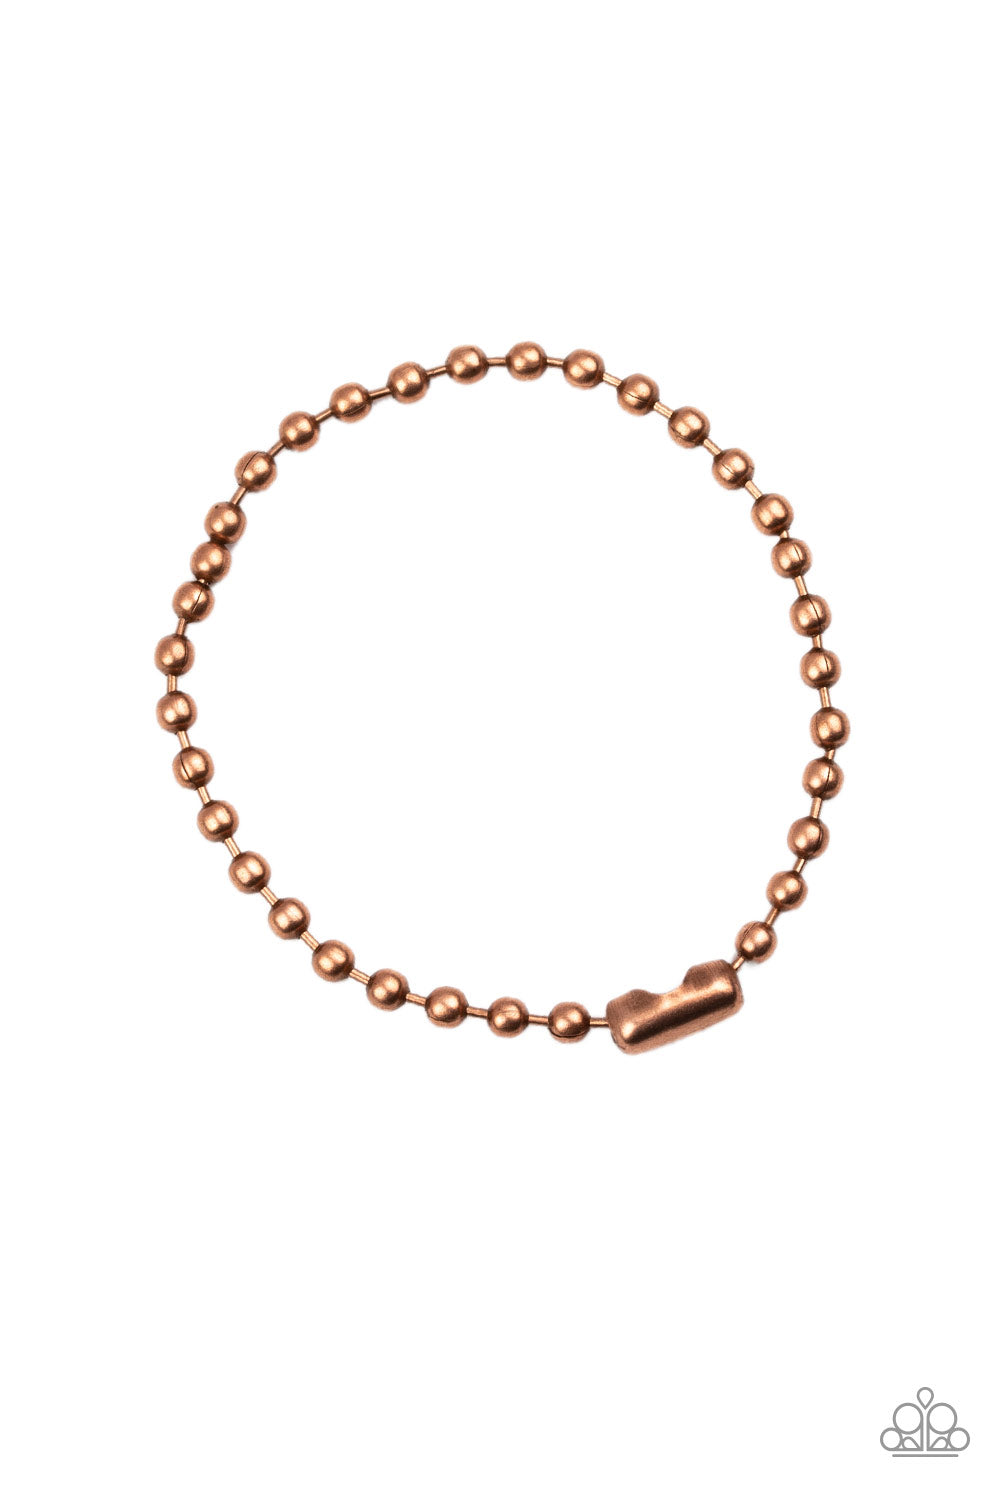 The Recruit - copper - Paparazzi mens bracelet